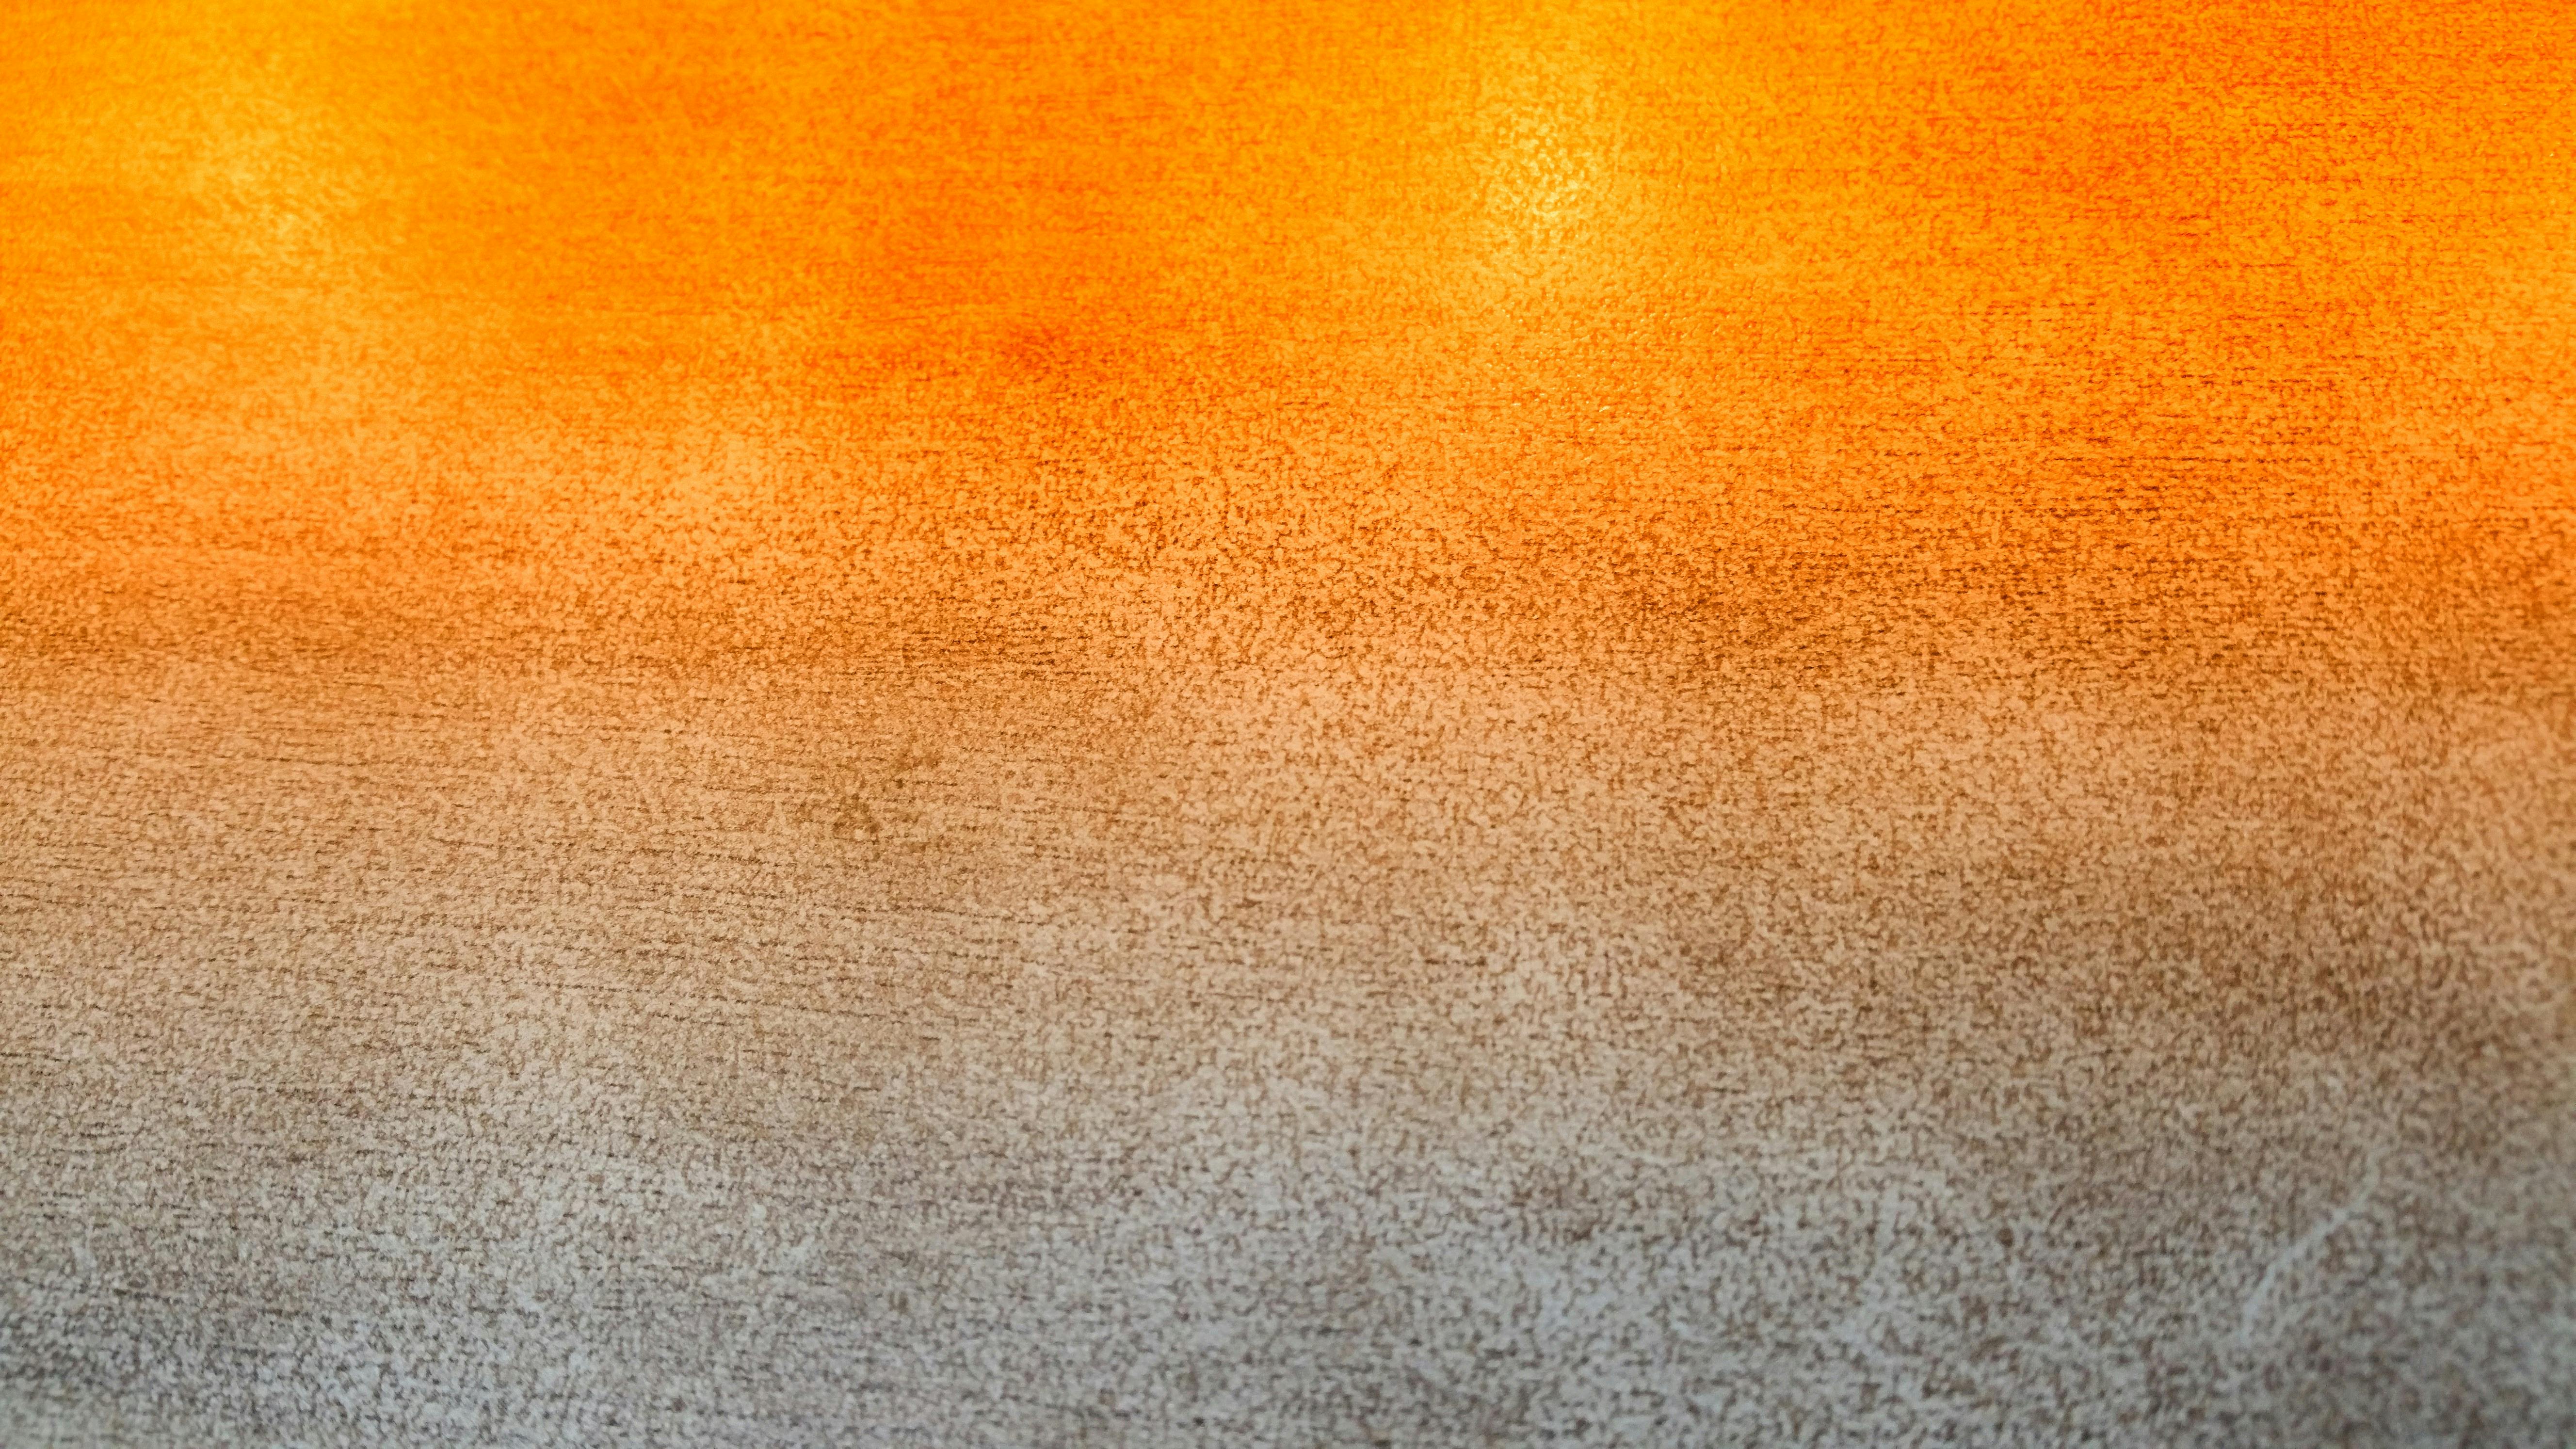 Hdの壁紙 オレンジ シェードの無料の写真素材